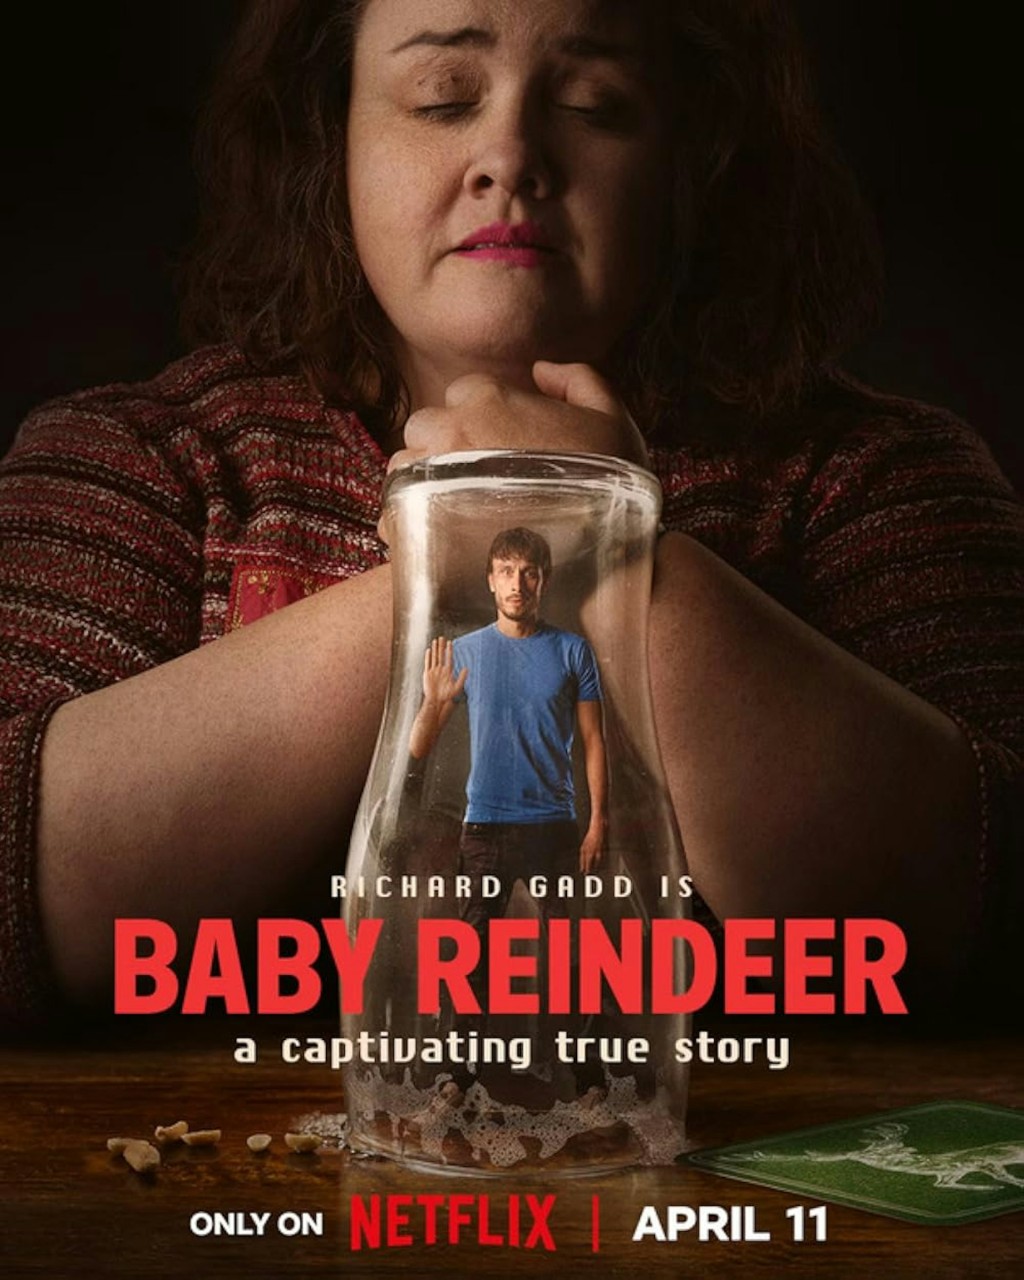 锺雪莹昨晚（2日）借用讲述跟踪狂故事的Netflix悬疑惊悚剧《驯鹿宝贝》（Baby Reindeer），暗示私下不断遭受狂迷骚扰。